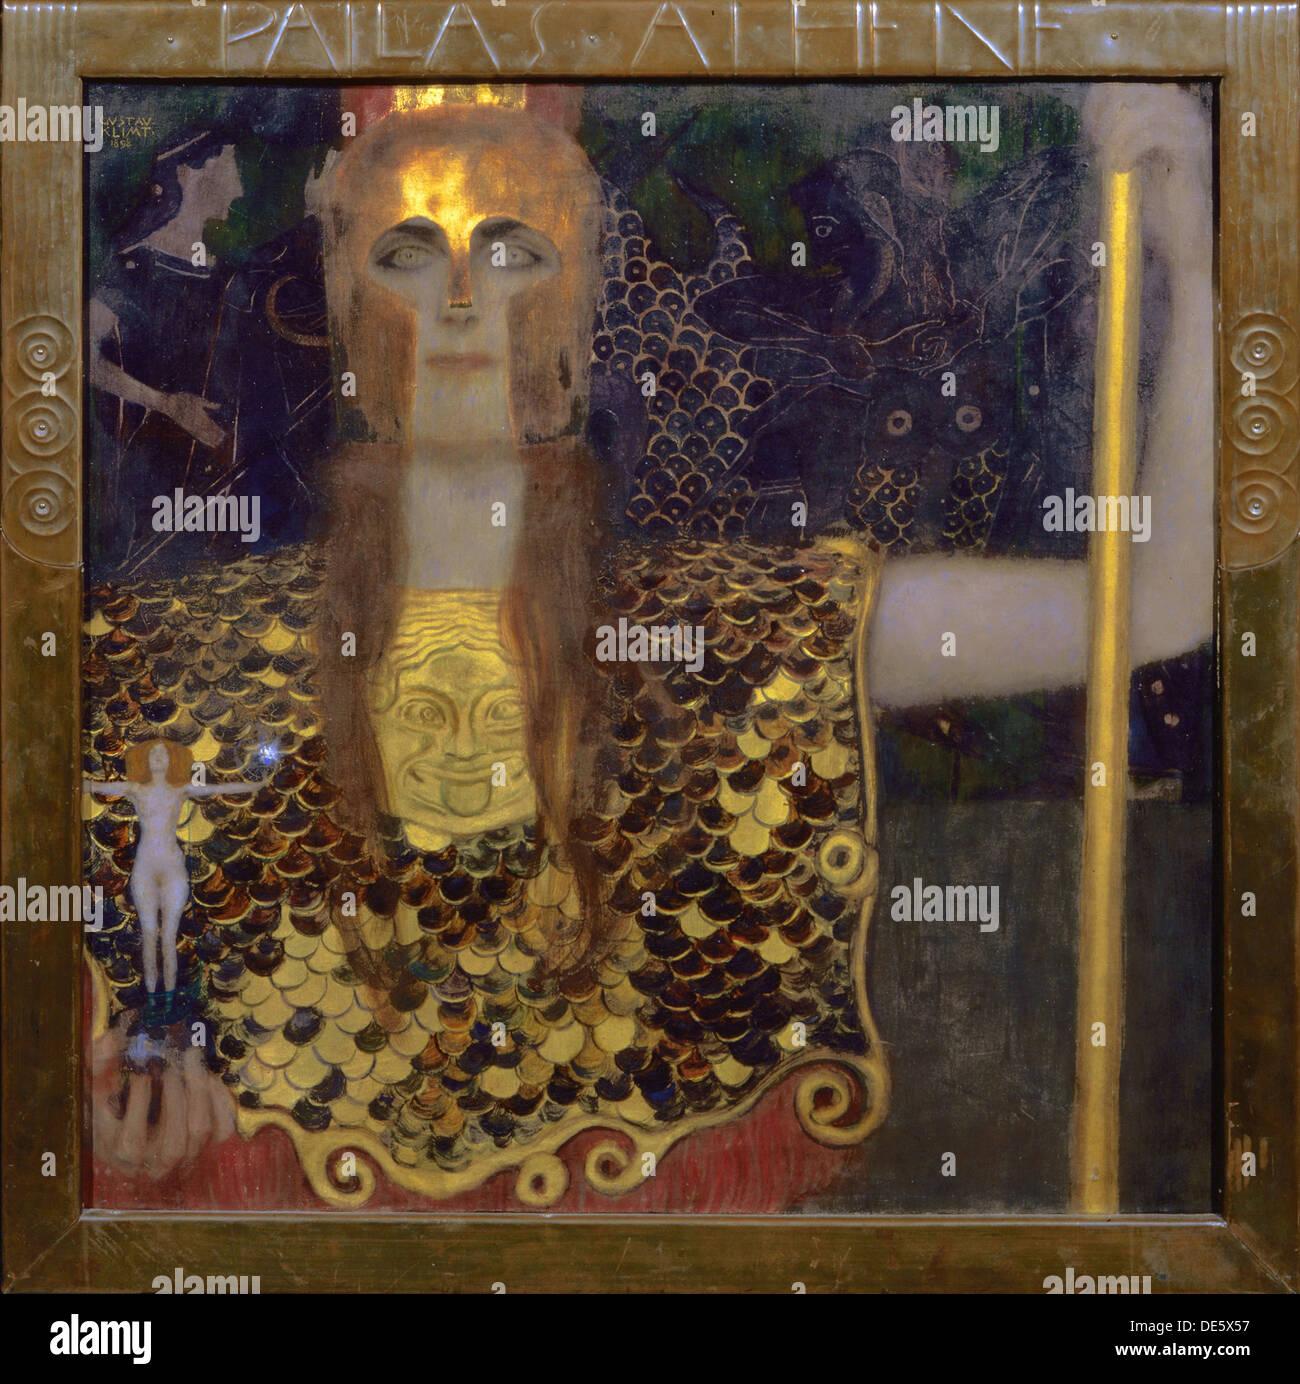 Pallas Athena, 1898. Artiste : Klimt, Gustav (1862-1918) Banque D'Images